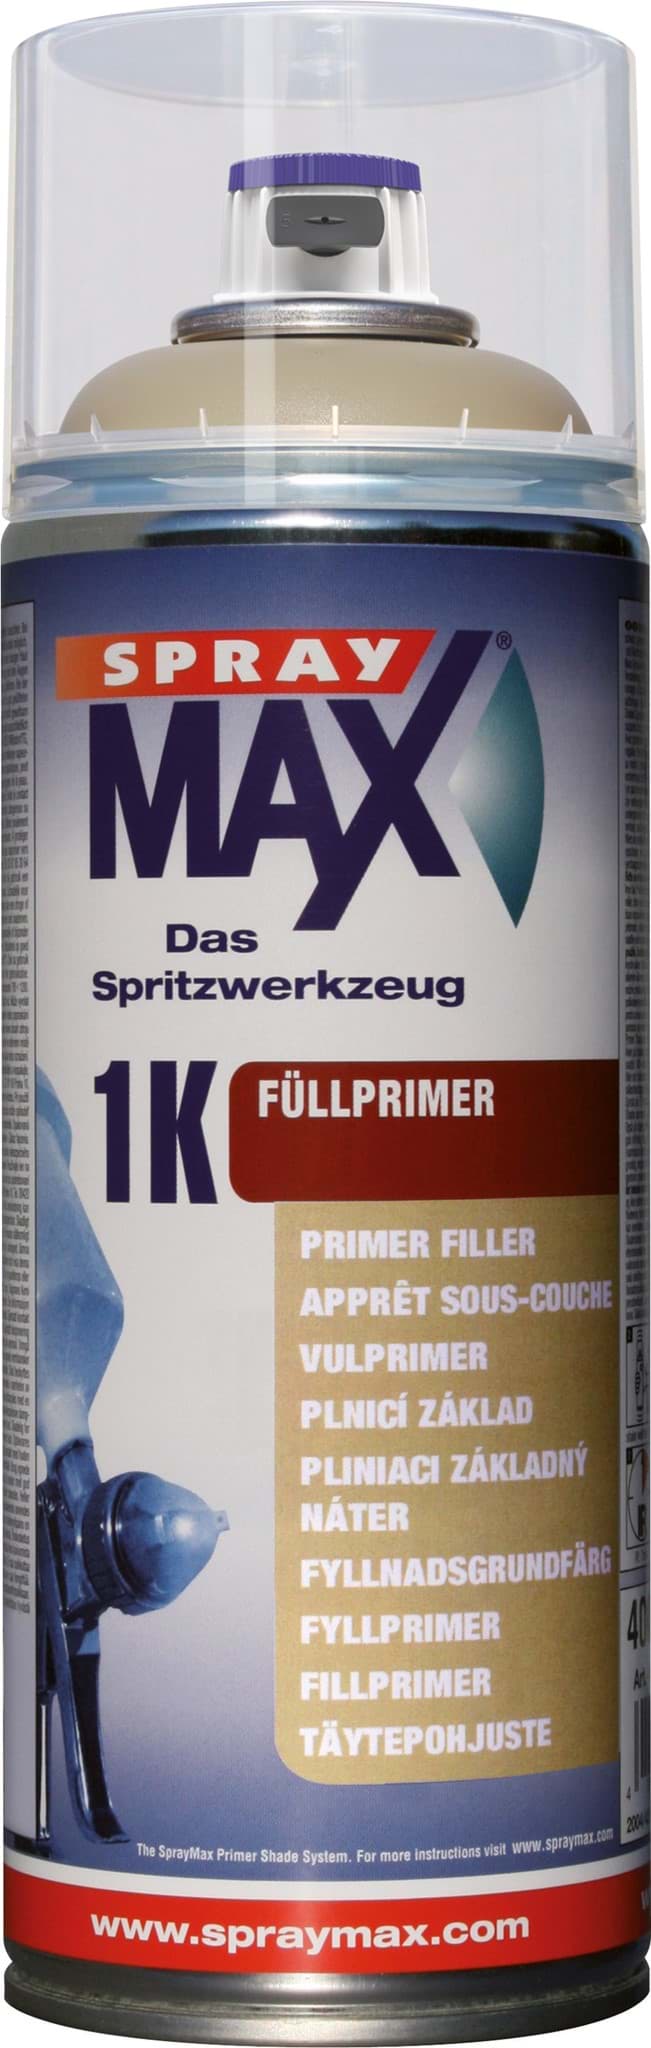 Picture of SprayMax 1K Füllprimer beige - Primer Shade Spray 400ml